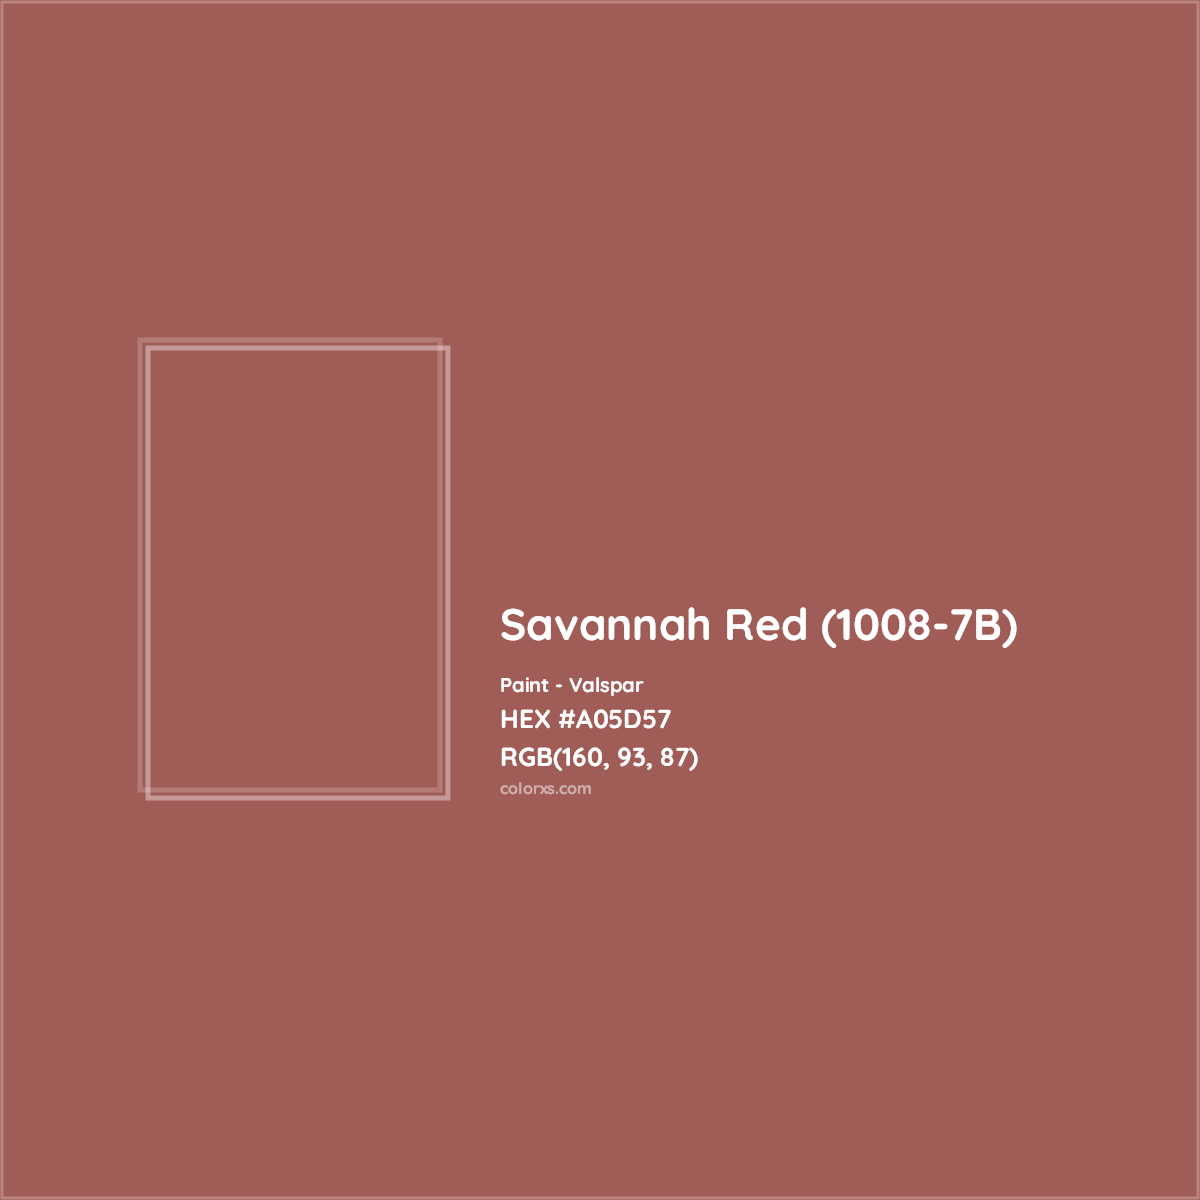 HEX #A05D57 Savannah Red (1008-7B) Paint Valspar - Color Code